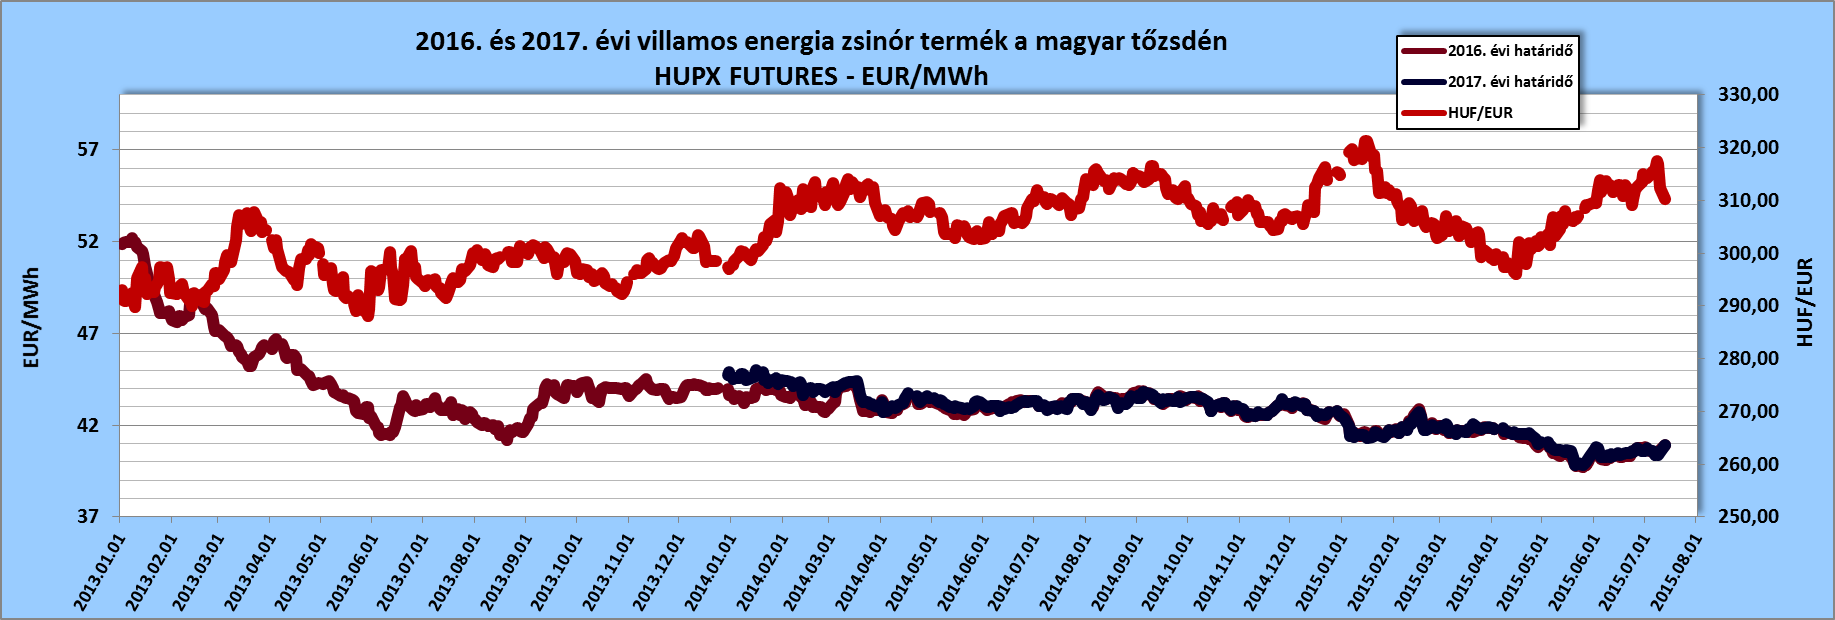 2016. és 2017. évi villamos energia zsinór termék a magyar tőzsdén, forrás: www.hupx.hu